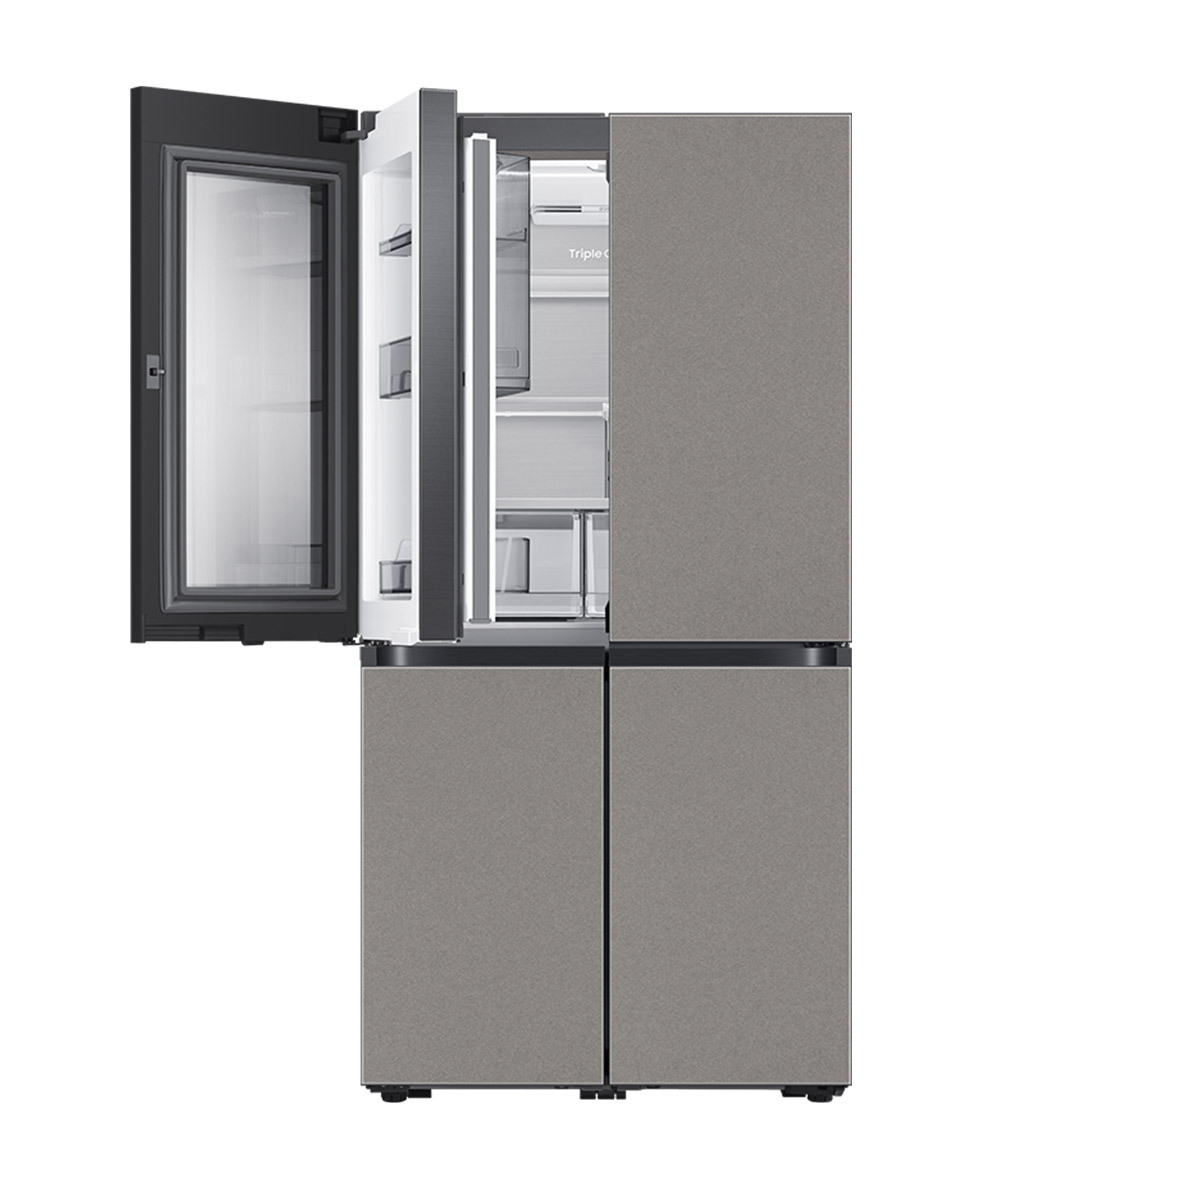 삼성 비스포크 투명도어 쇼케이스 냉장고 868L